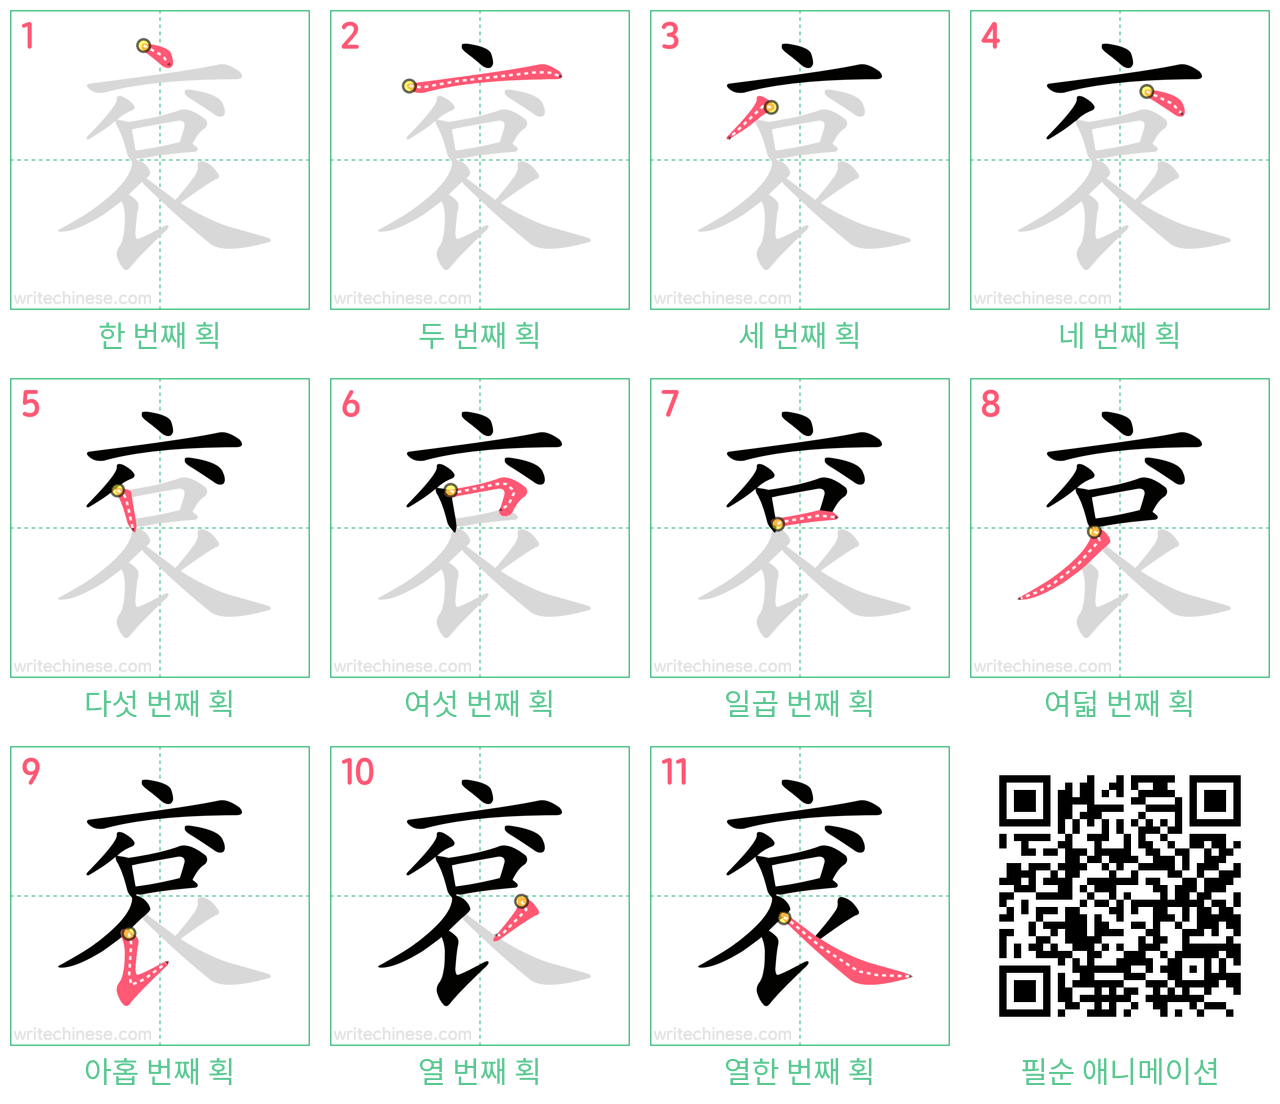 袞 step-by-step stroke order diagrams